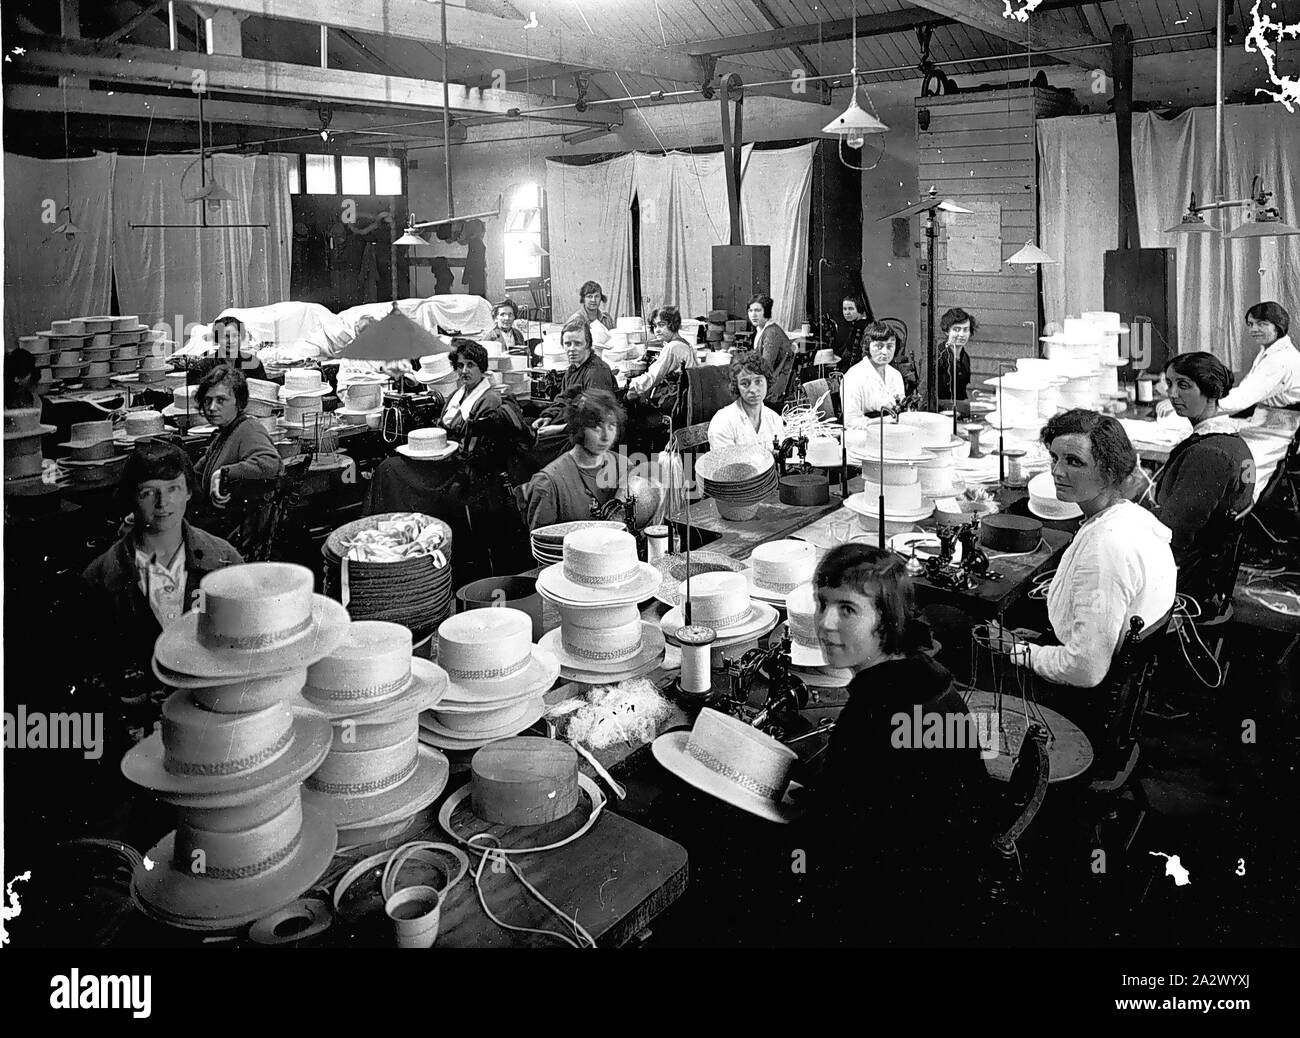 Negativo - Melbourne, Victoria, 1914, lavoratori in una fabbrica di hat. I lavoratori in primo piano sono macchinisti Foto Stock